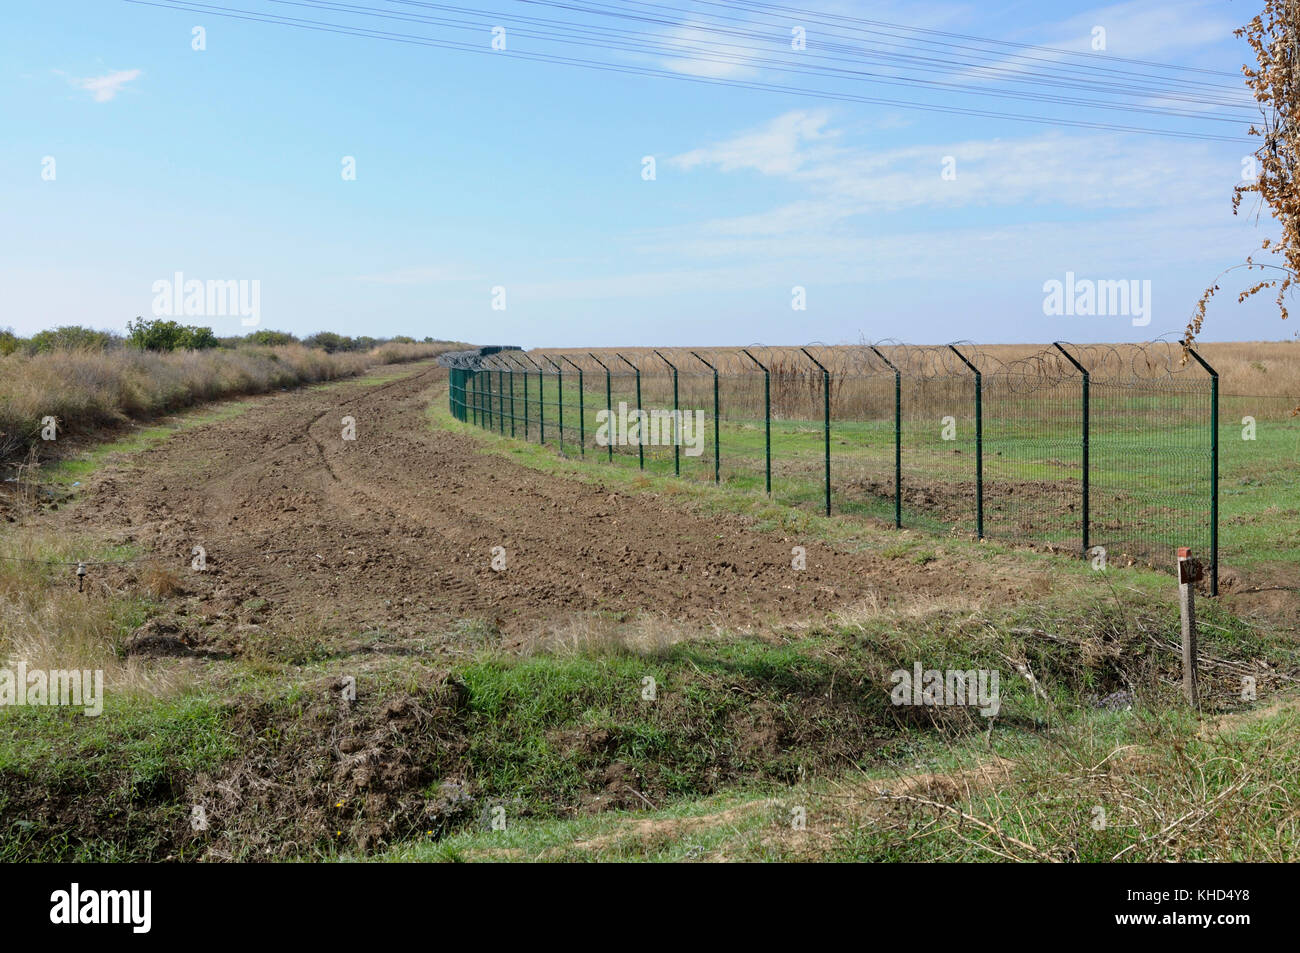 Parte dell'Ukrainian-Russian confine terrestre con filo di barbiere vicino al valico di frontiera Kalanchak. Settembre 20, 2017. Khersonskaya oblast, Ucraina Foto Stock